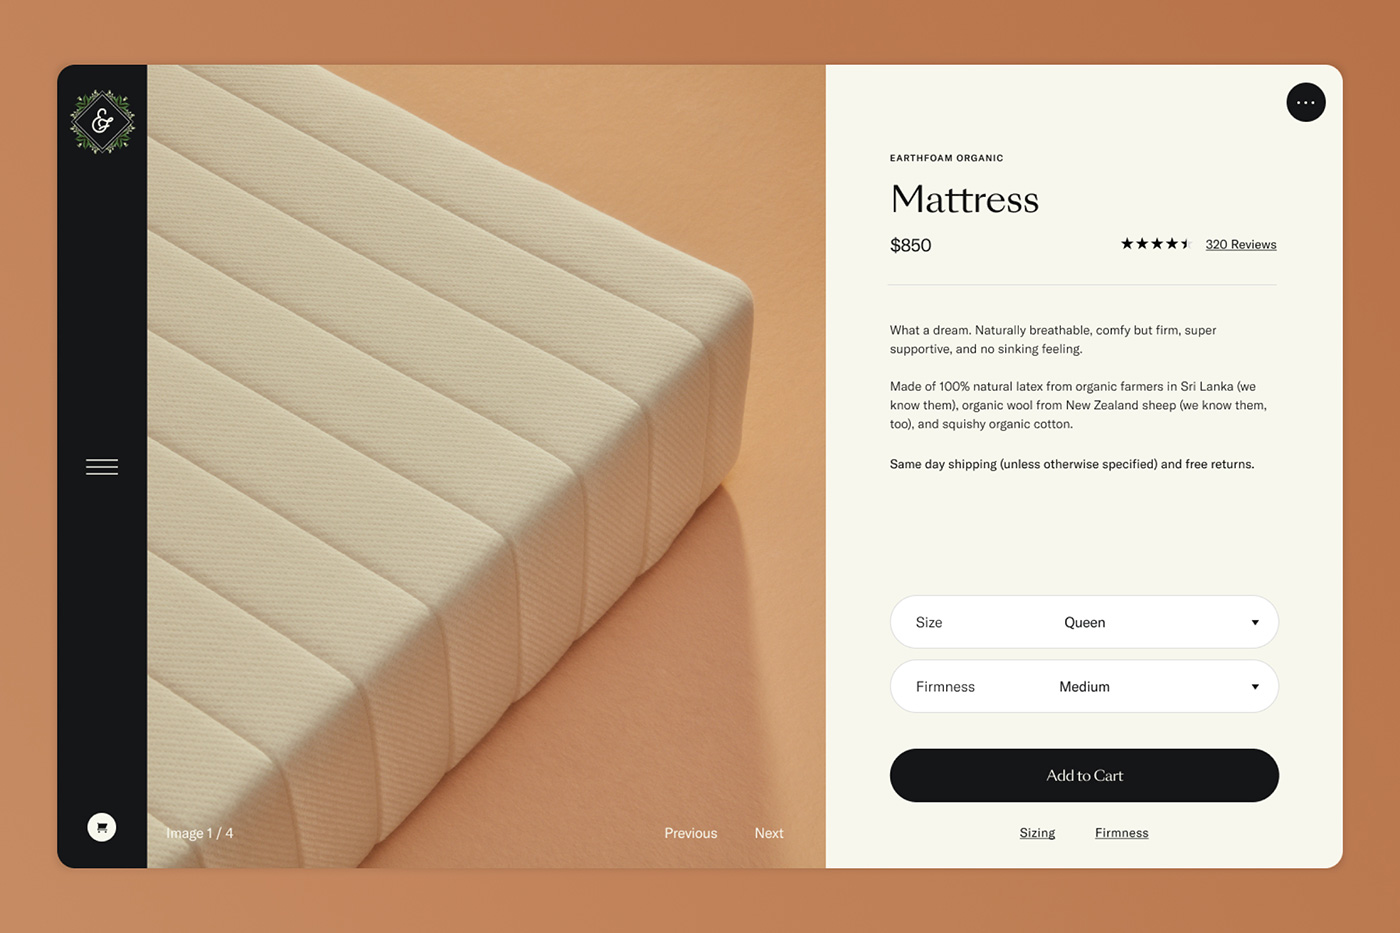 Earthfoam mattress